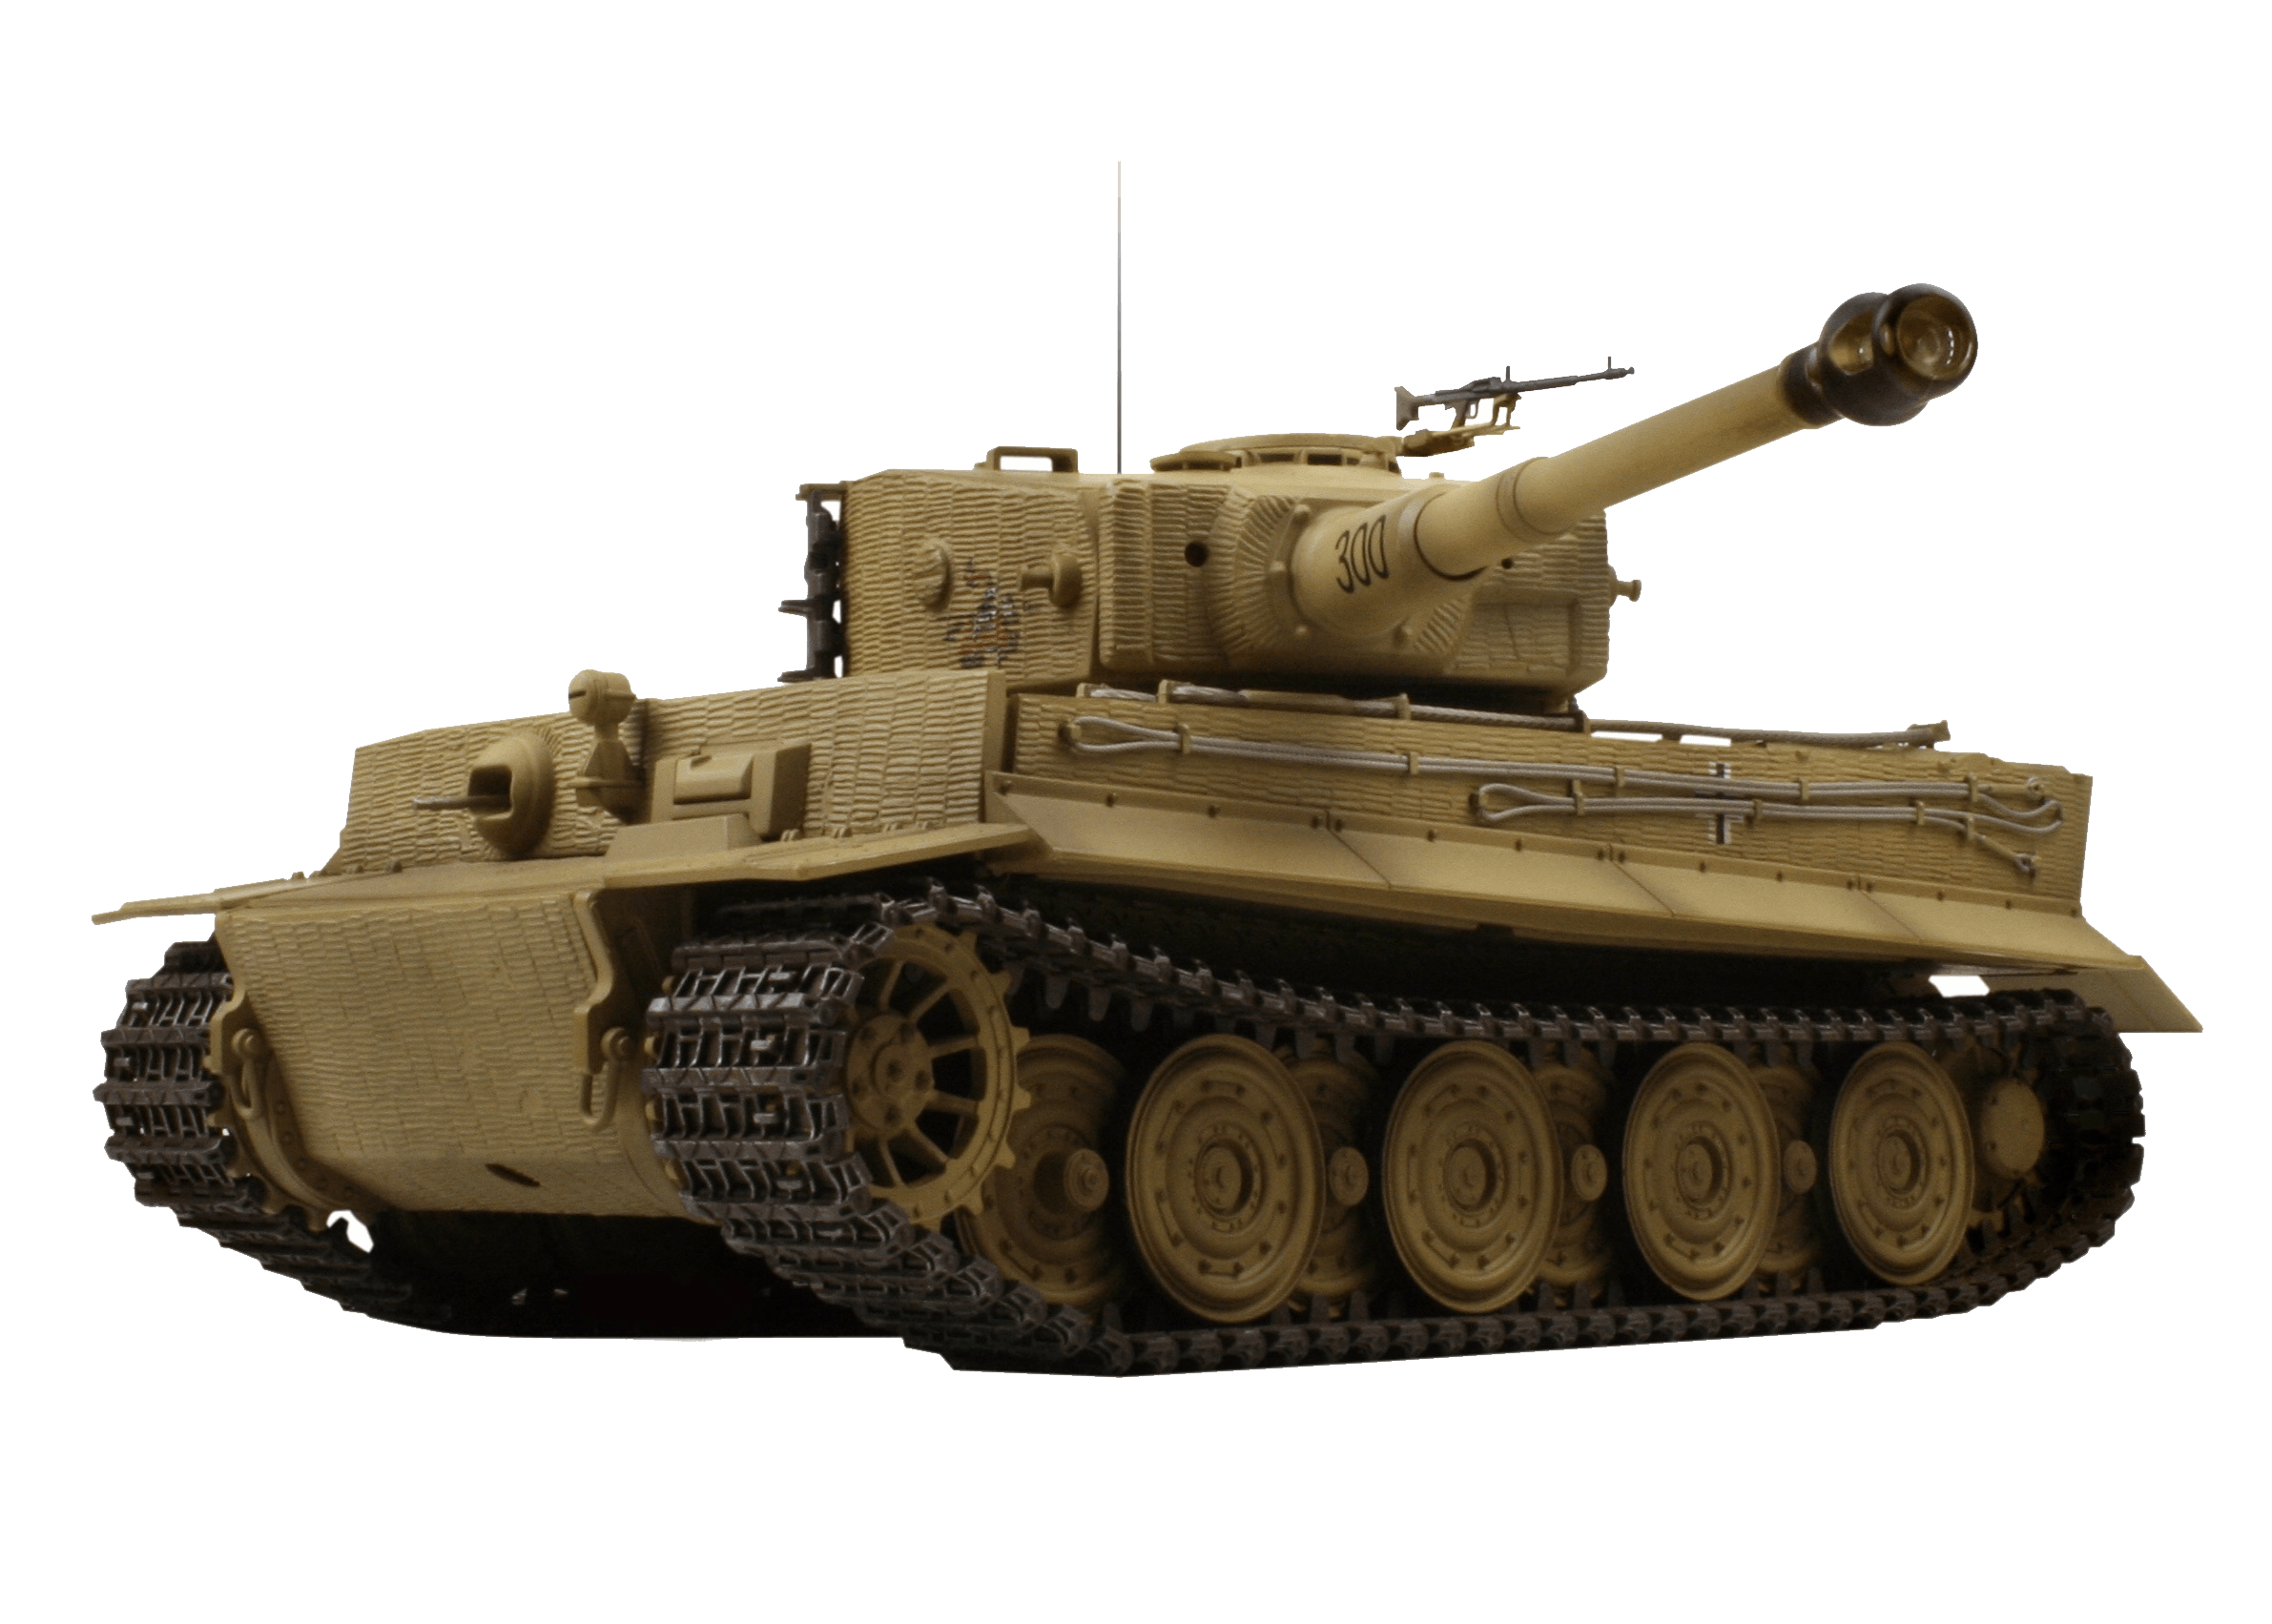 German Tiger Tank Png Image Armored Tank PNG Image